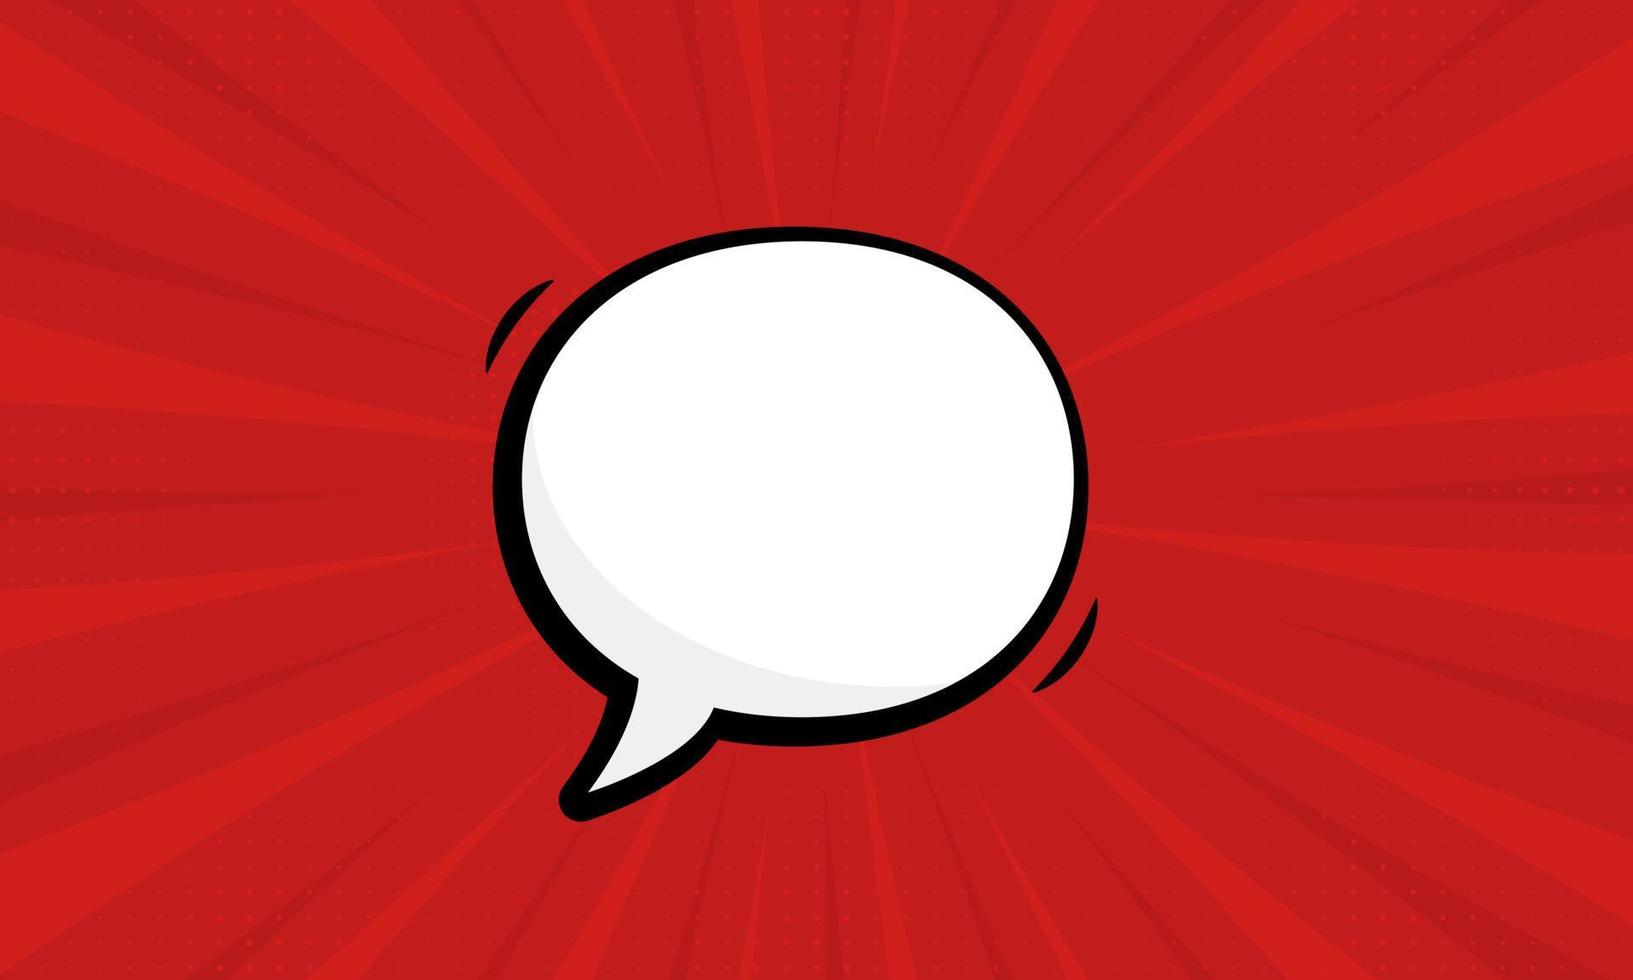 toespraak bubble pictogram op rode popart achtergrond met halftoon. cartoon lege witte tekstballon voor SMS-bericht. komische retro ballon voor dialoog. geïsoleerde vectorillustratie. vector